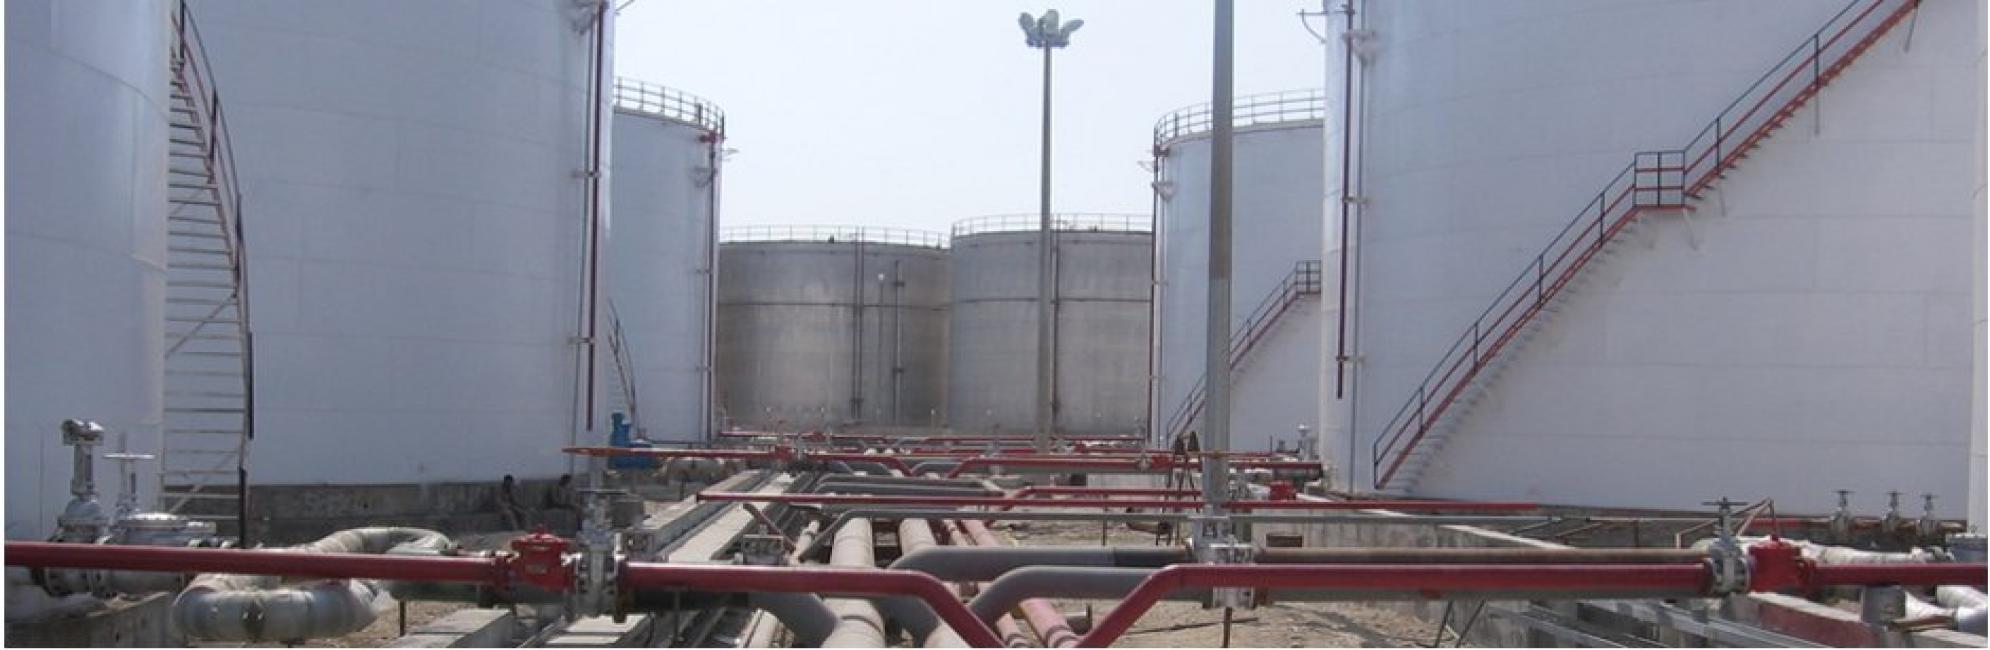  پروژه احداث انبار ذخیره سازی و صدور فرآورده های نفتی  واقع در بندر خلیج فارس